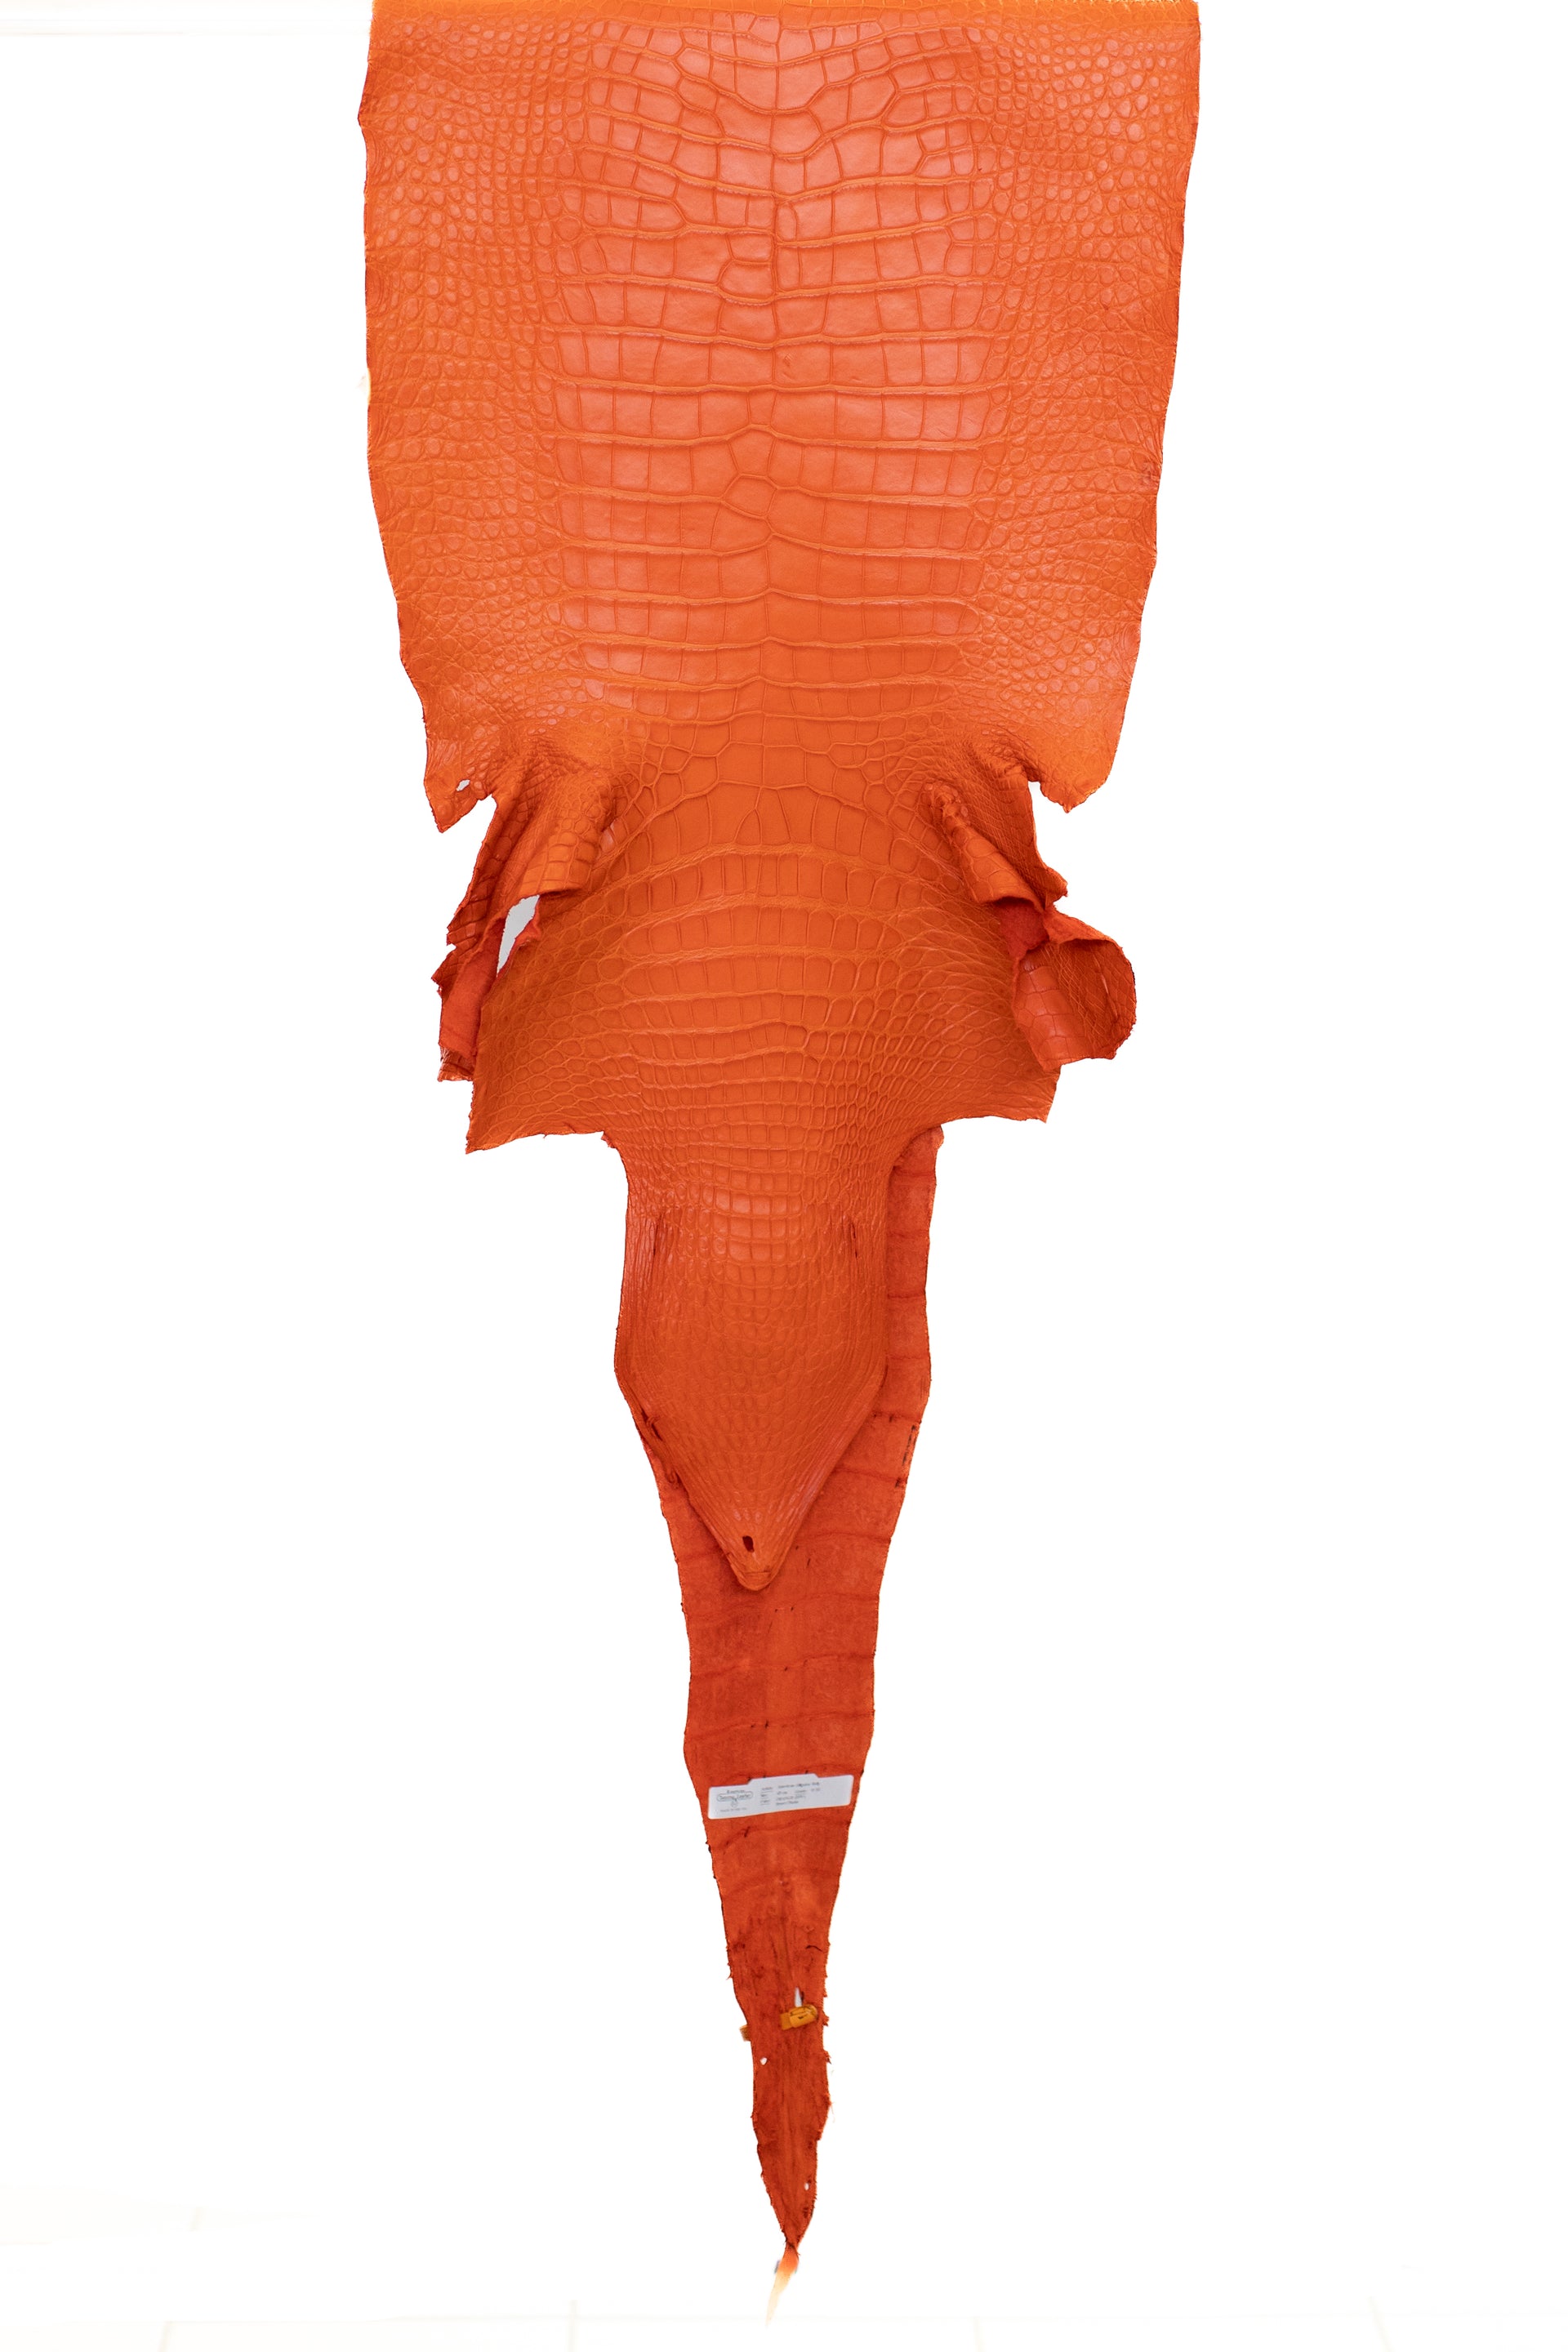 45 cm Grade 2/3 Orange Matte Wild American Alligator Leather - Tag: LA22-0013656